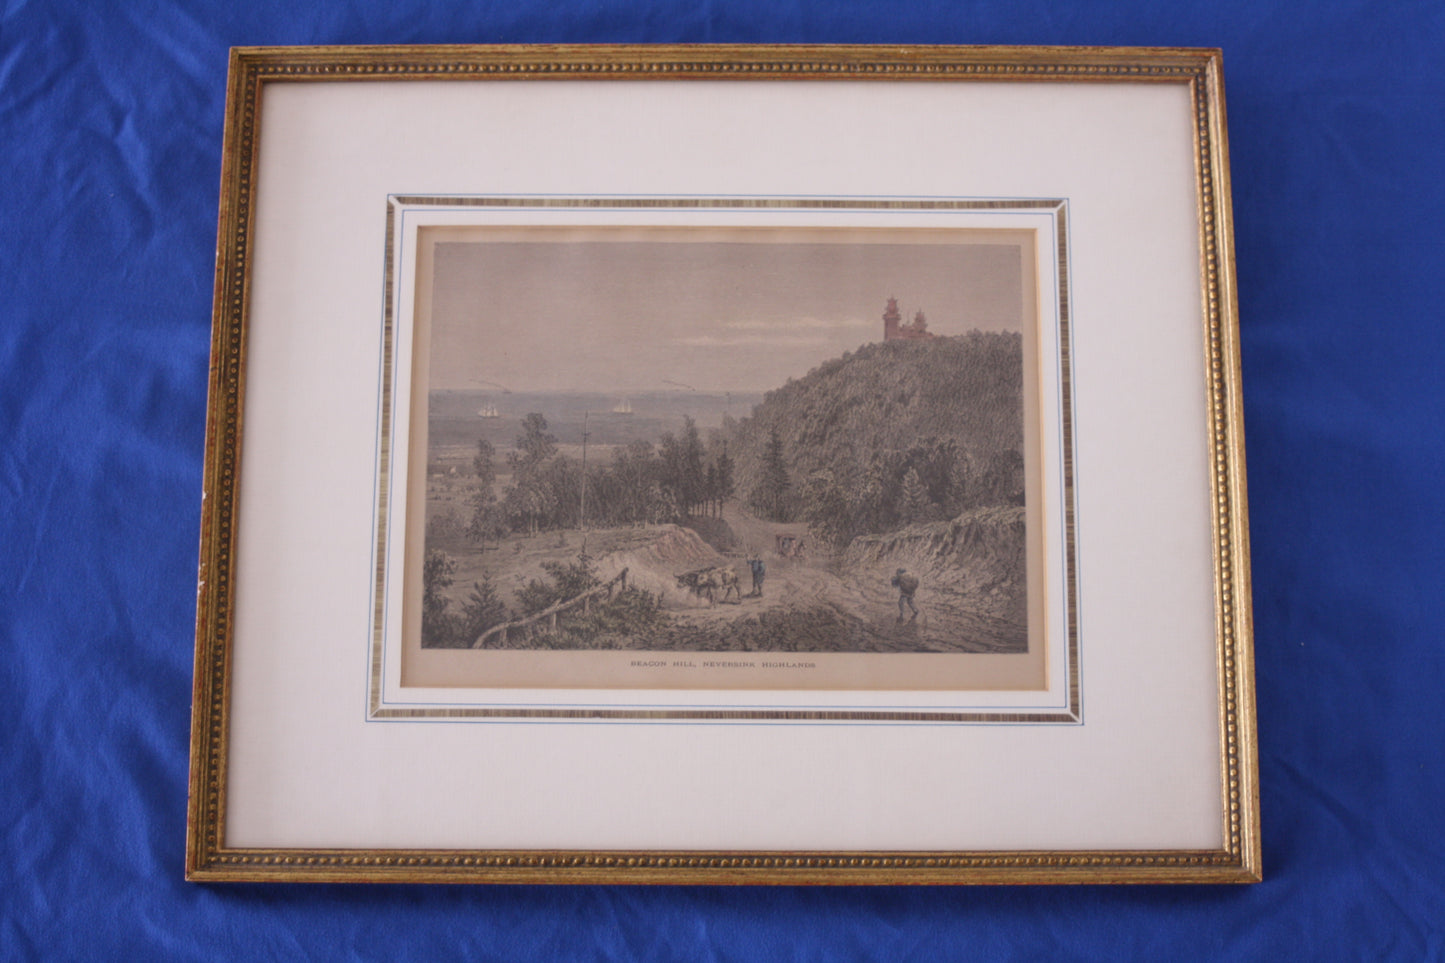 Framed Vintage Print- "Beacon Hill"- Neversink, Highlands